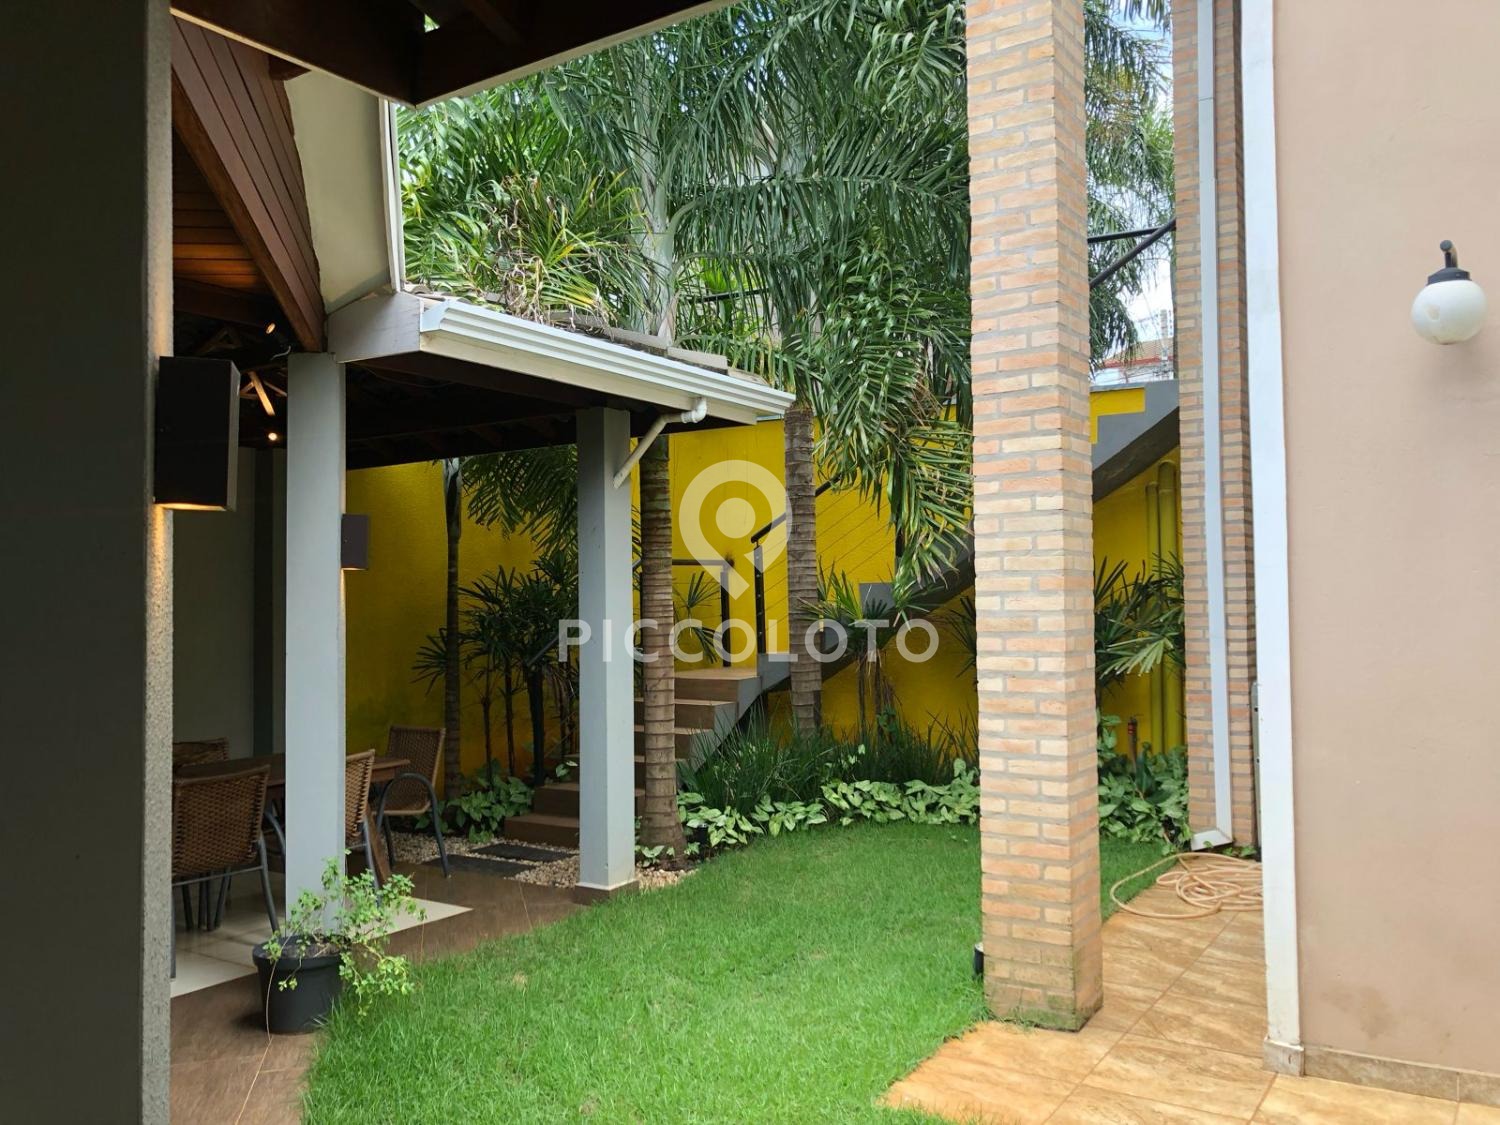 Piccoloto -Casa à venda no Jardim Santa Genebra em Campinas